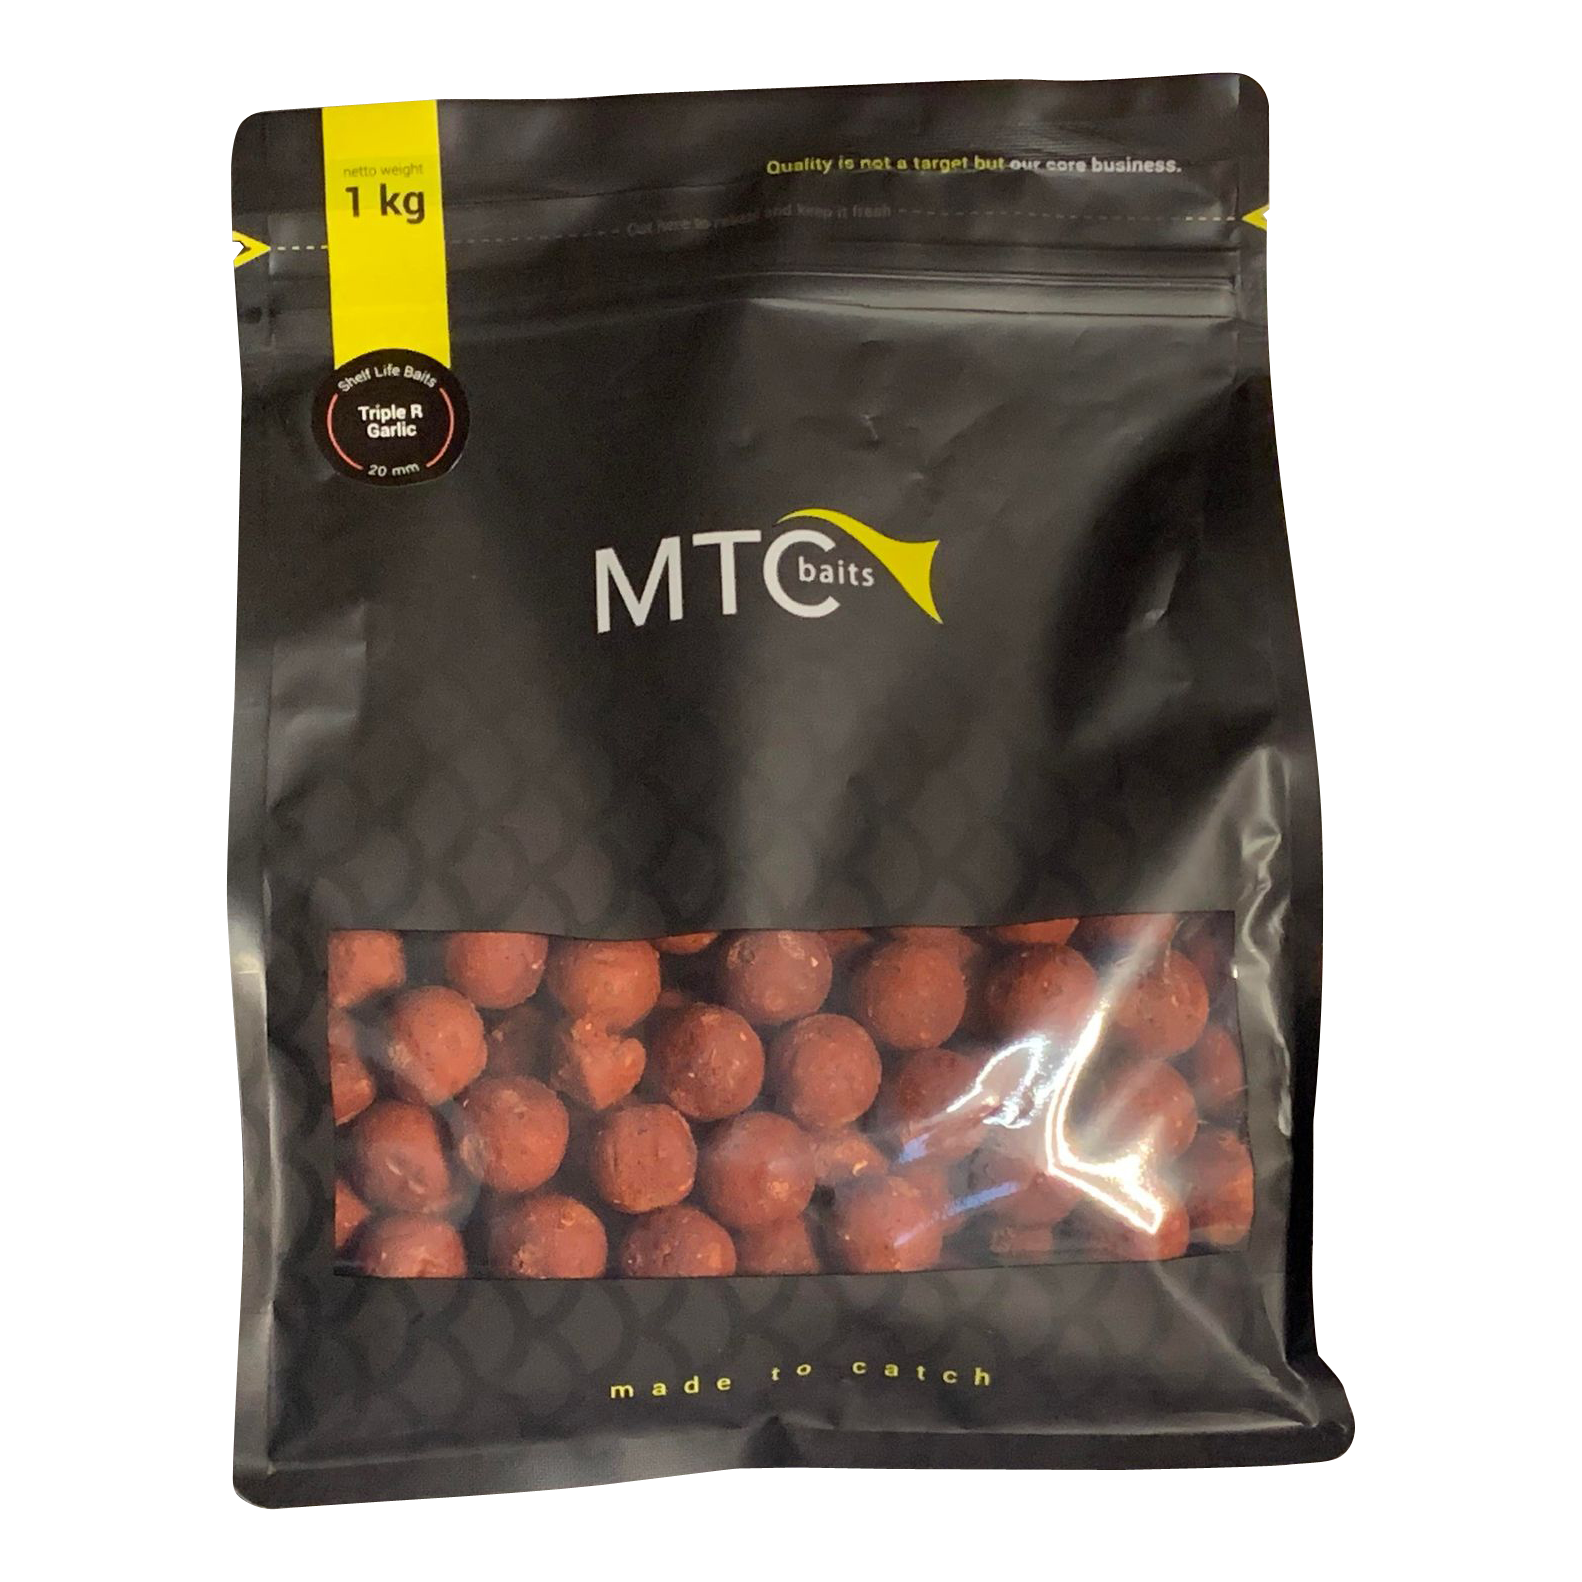 MTC Baits Readymades Triple R Garlic 1kg